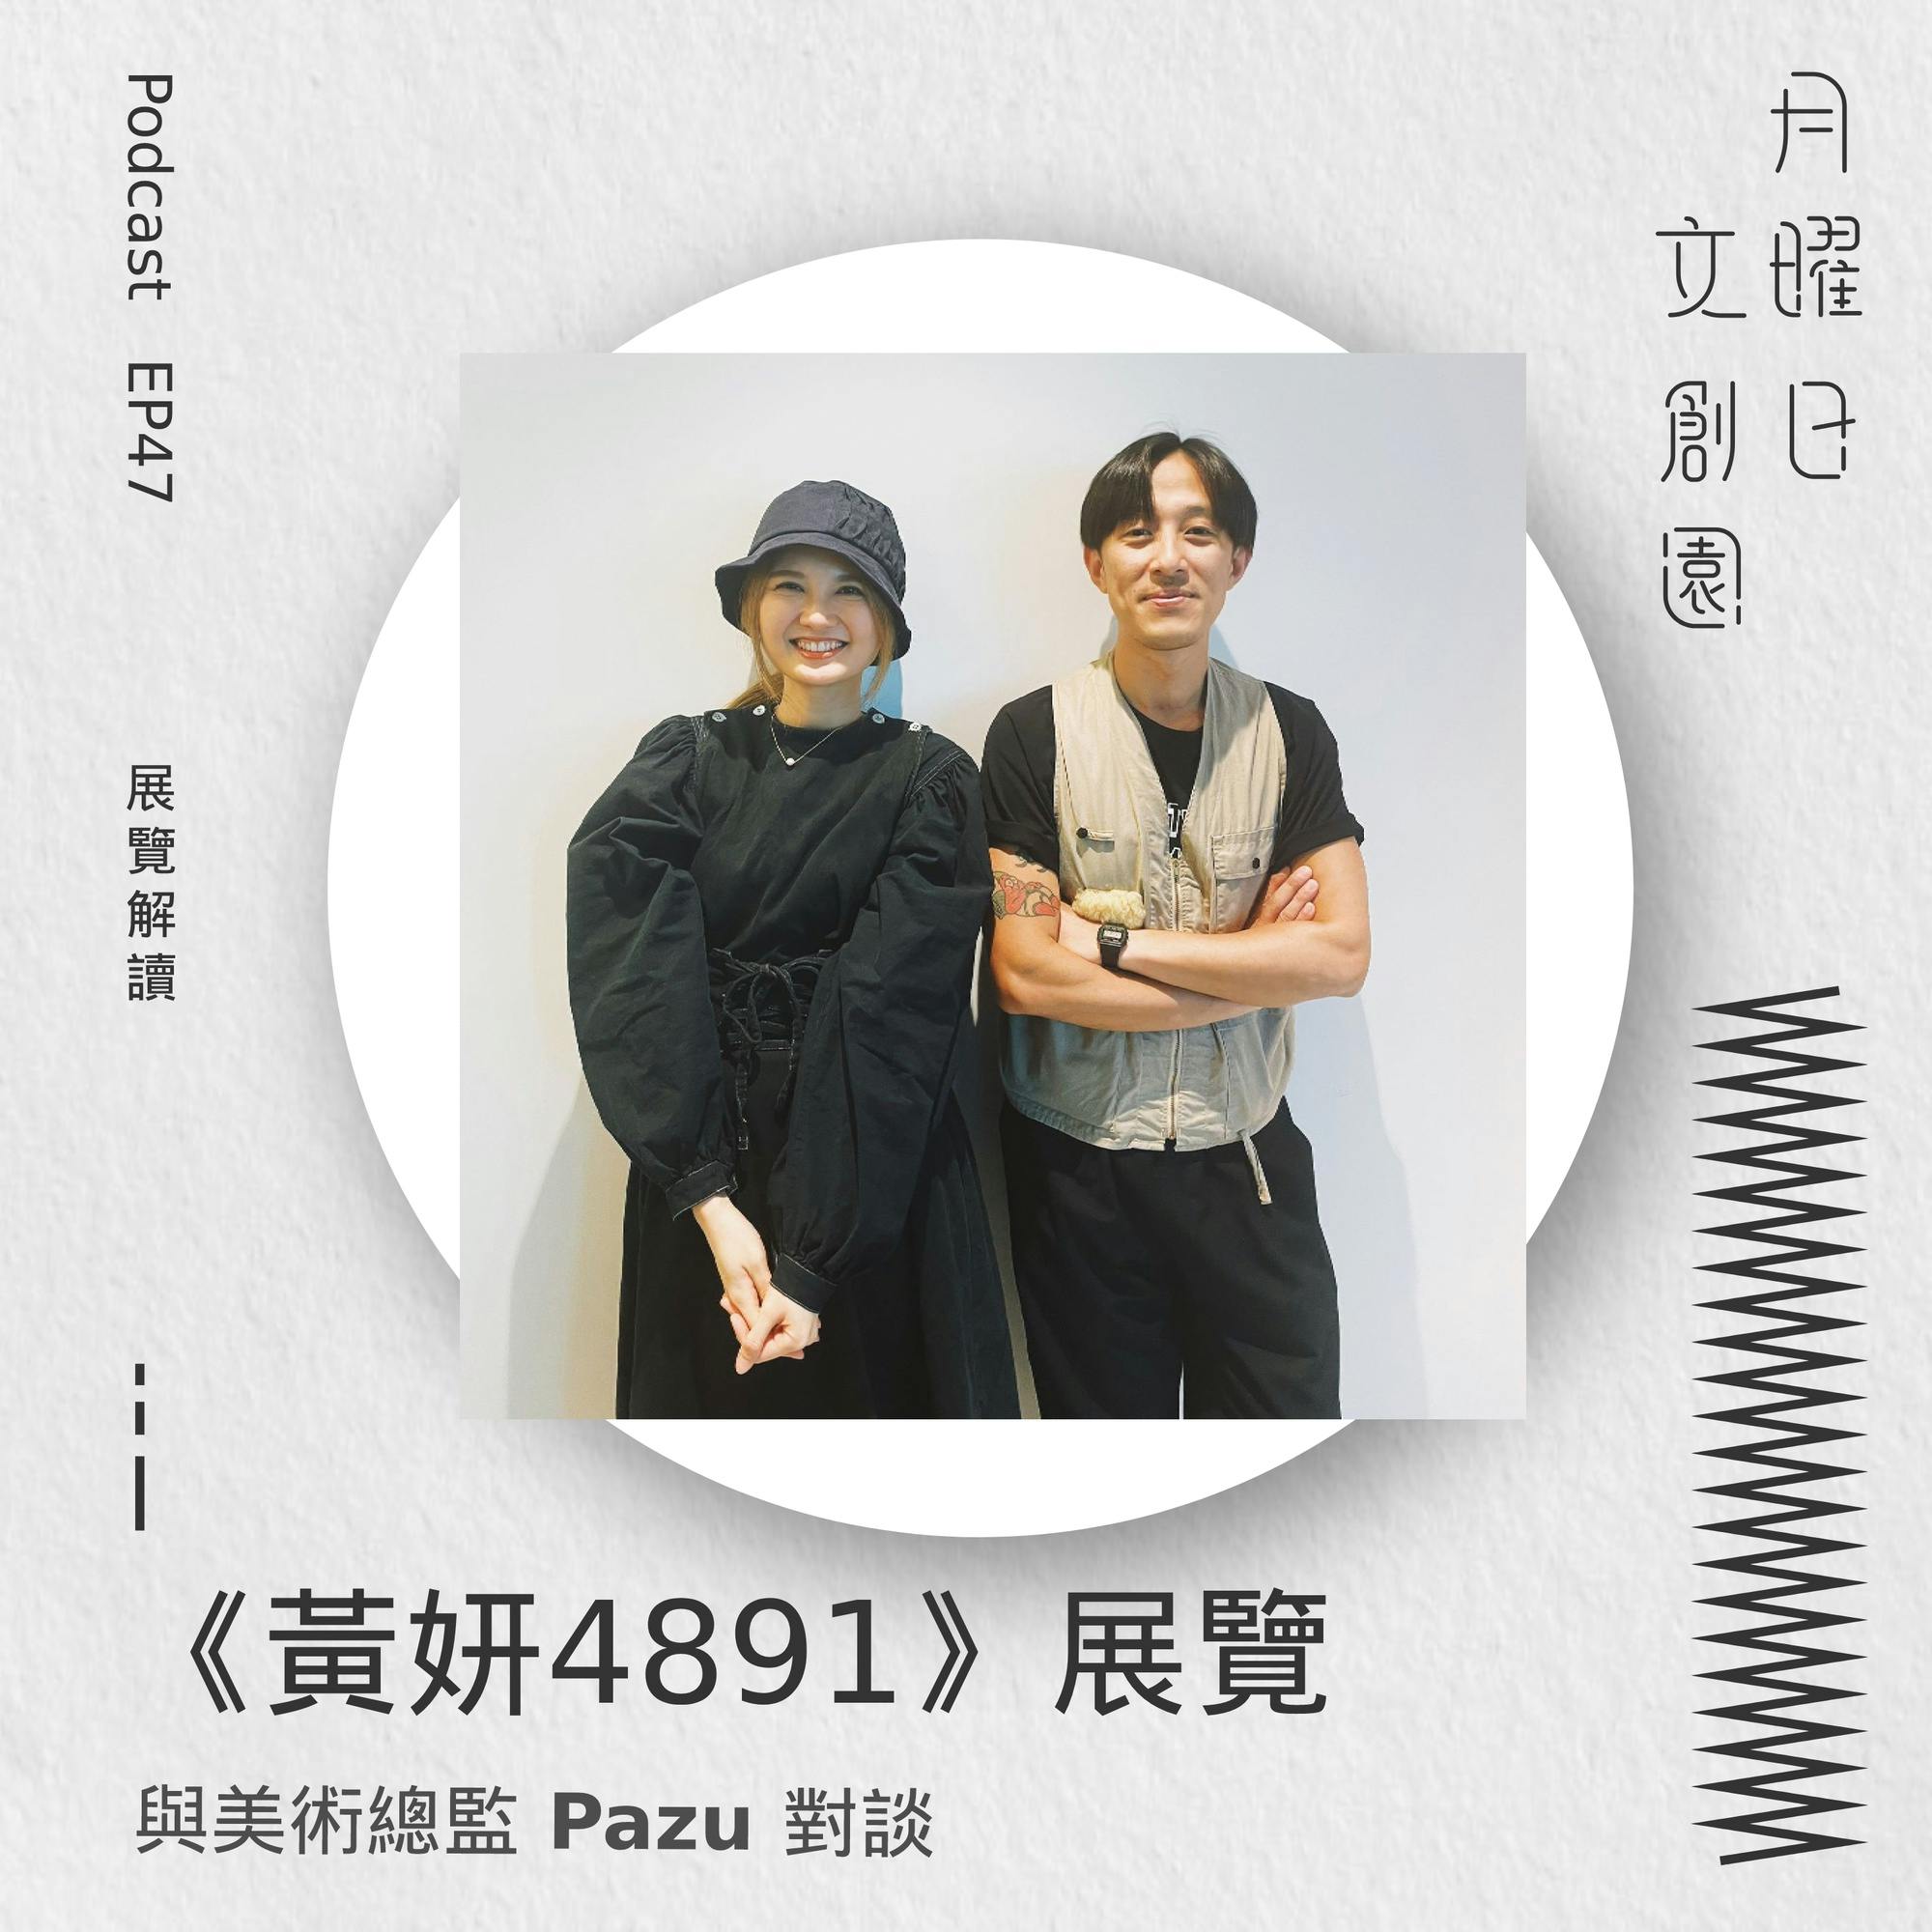 《黃妍4891》展覽 - 與美術總監 Pazu 對談